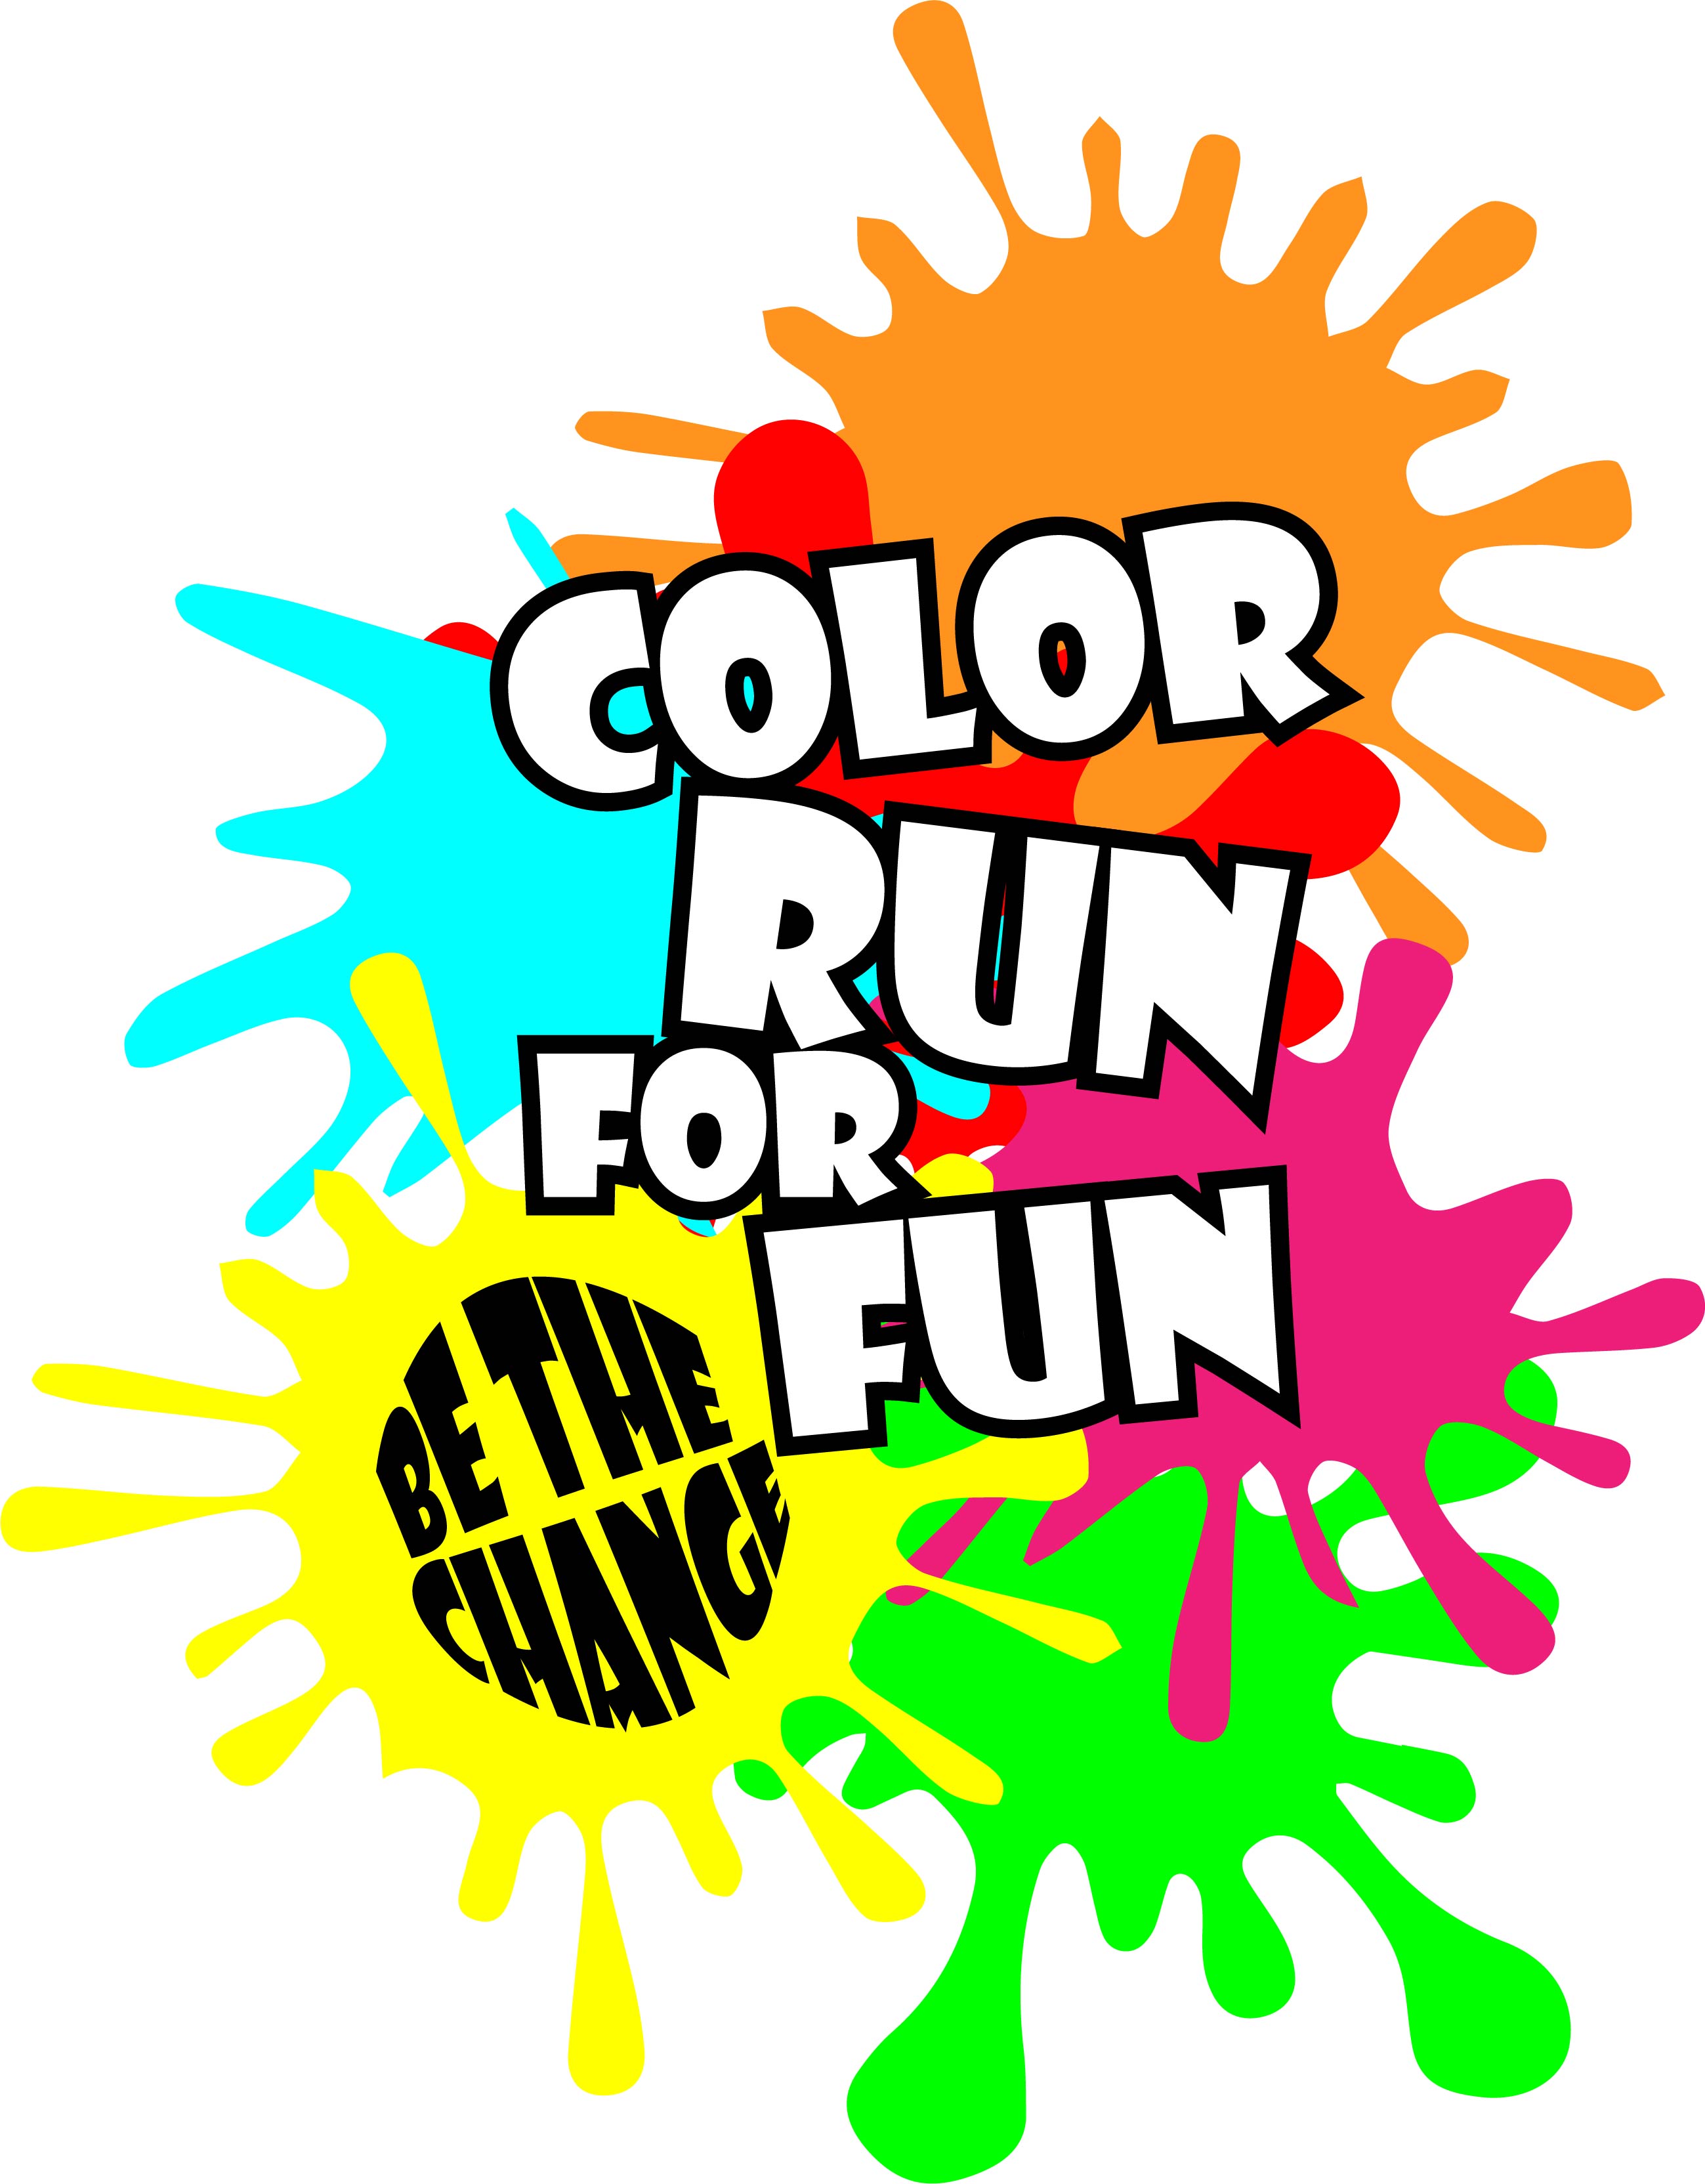 Color Run for Fun.